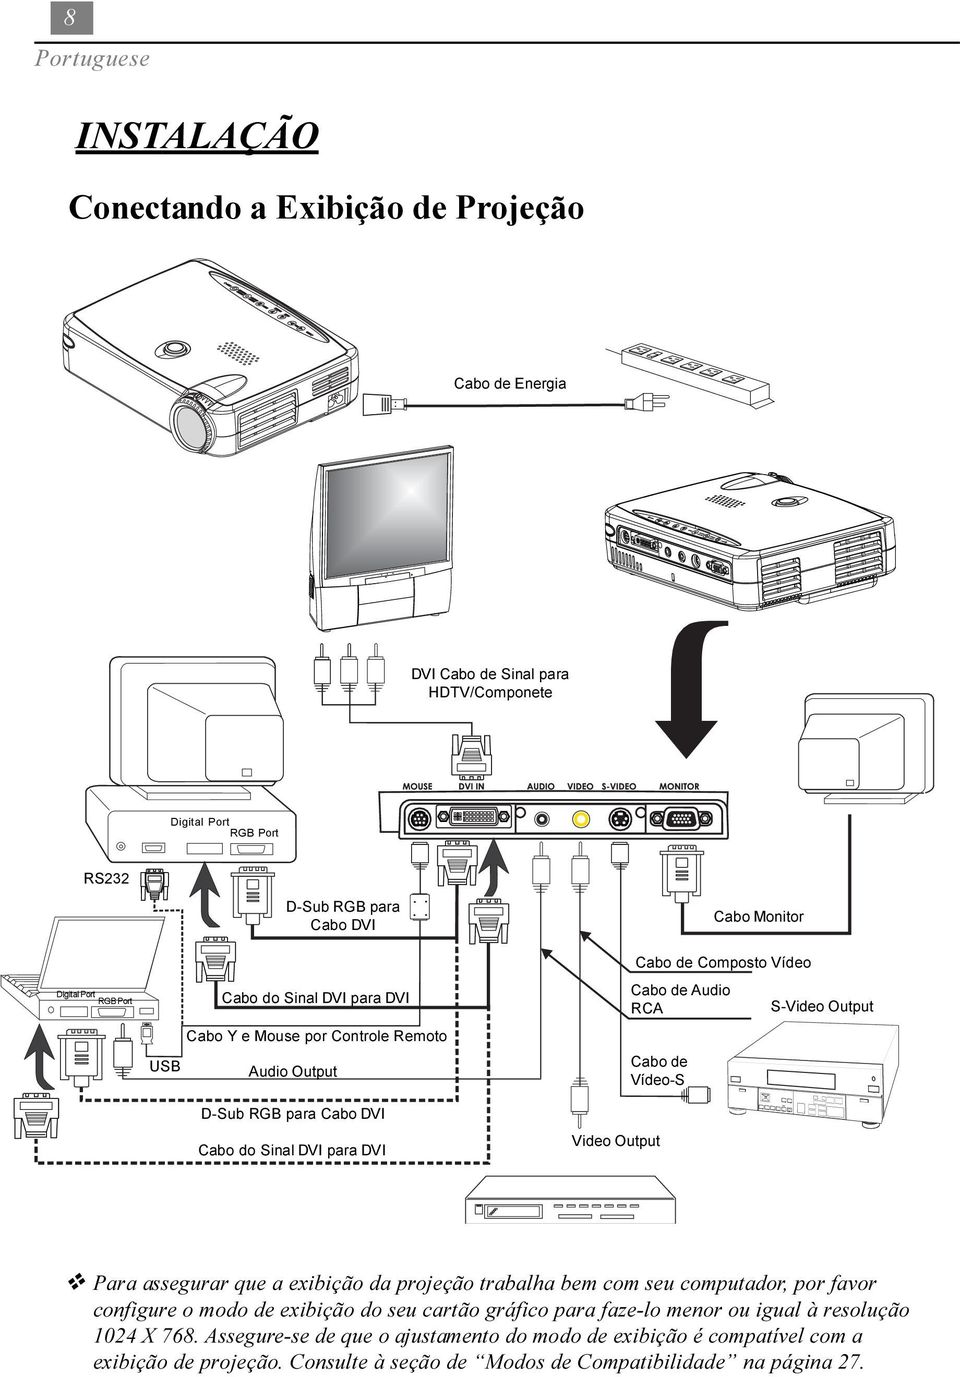 Cabo de Audio RCA S-Video Output v Para assegurar que a exibição da projeção trabalha bem com seu computador, por favor configure o modo de exibição do seu cartão gráfico para faze-lo